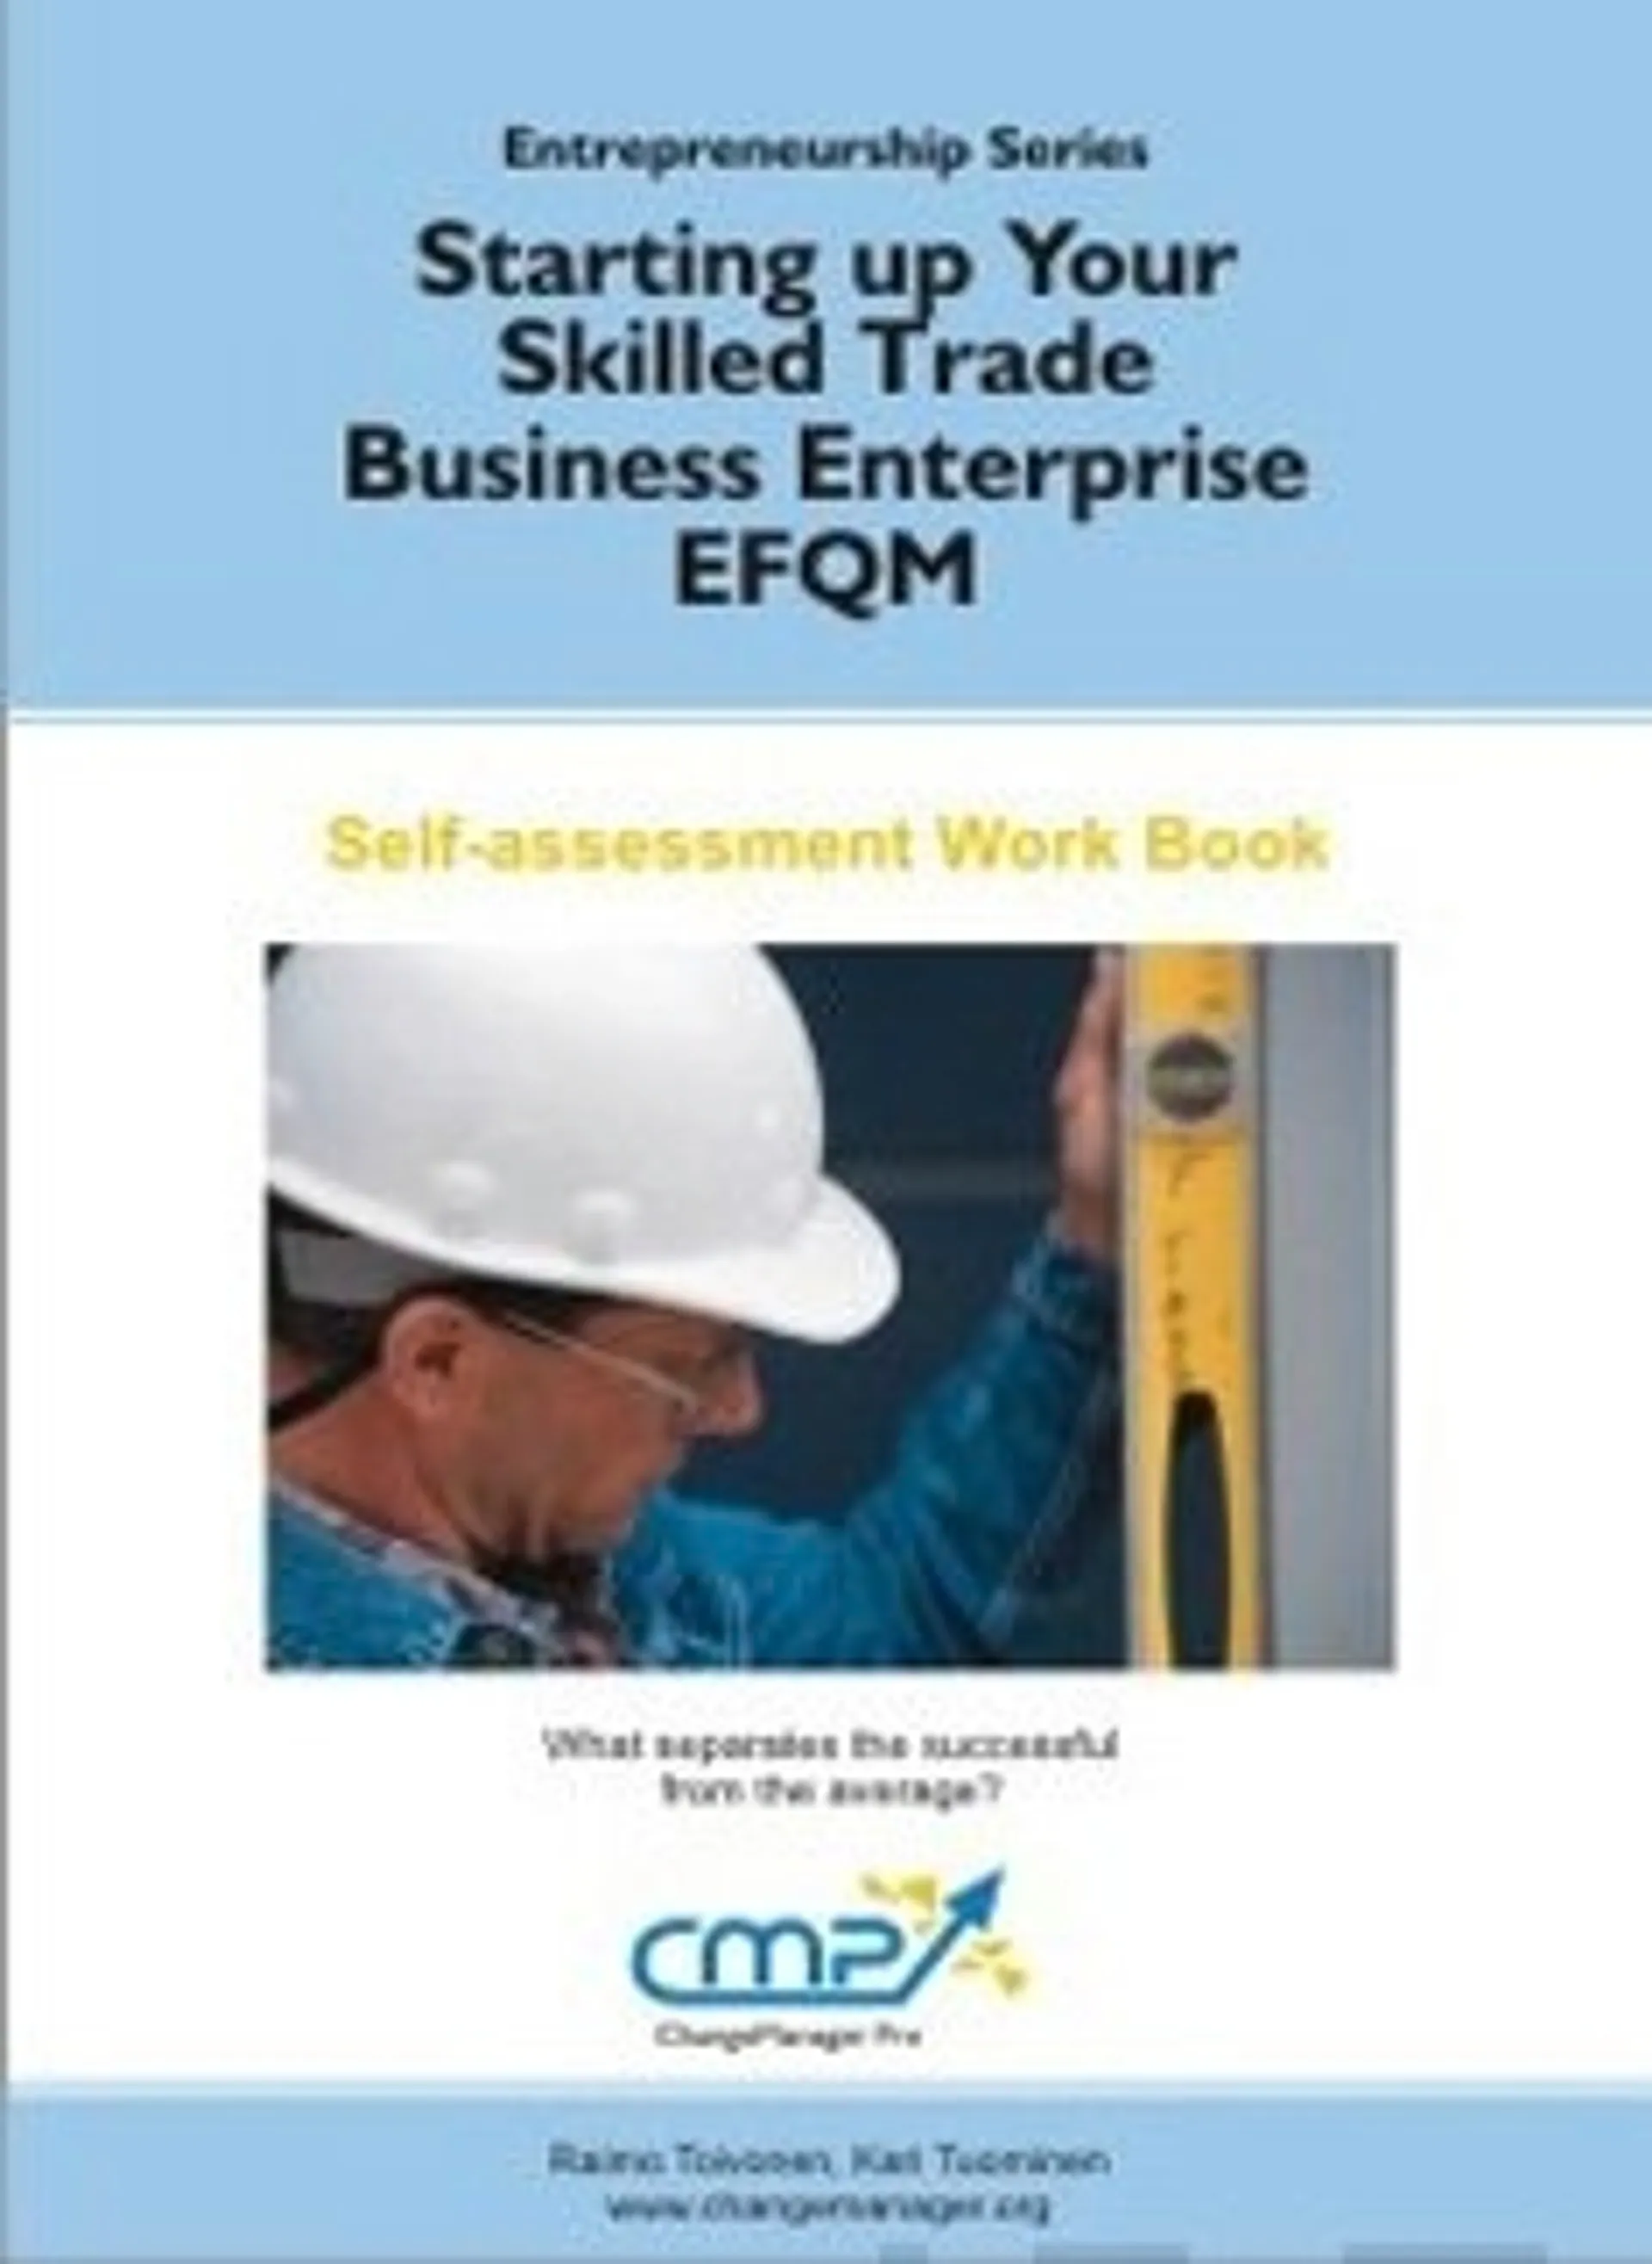 Starting up Your Skilled Trade Business Enterprise - EFQM 2010